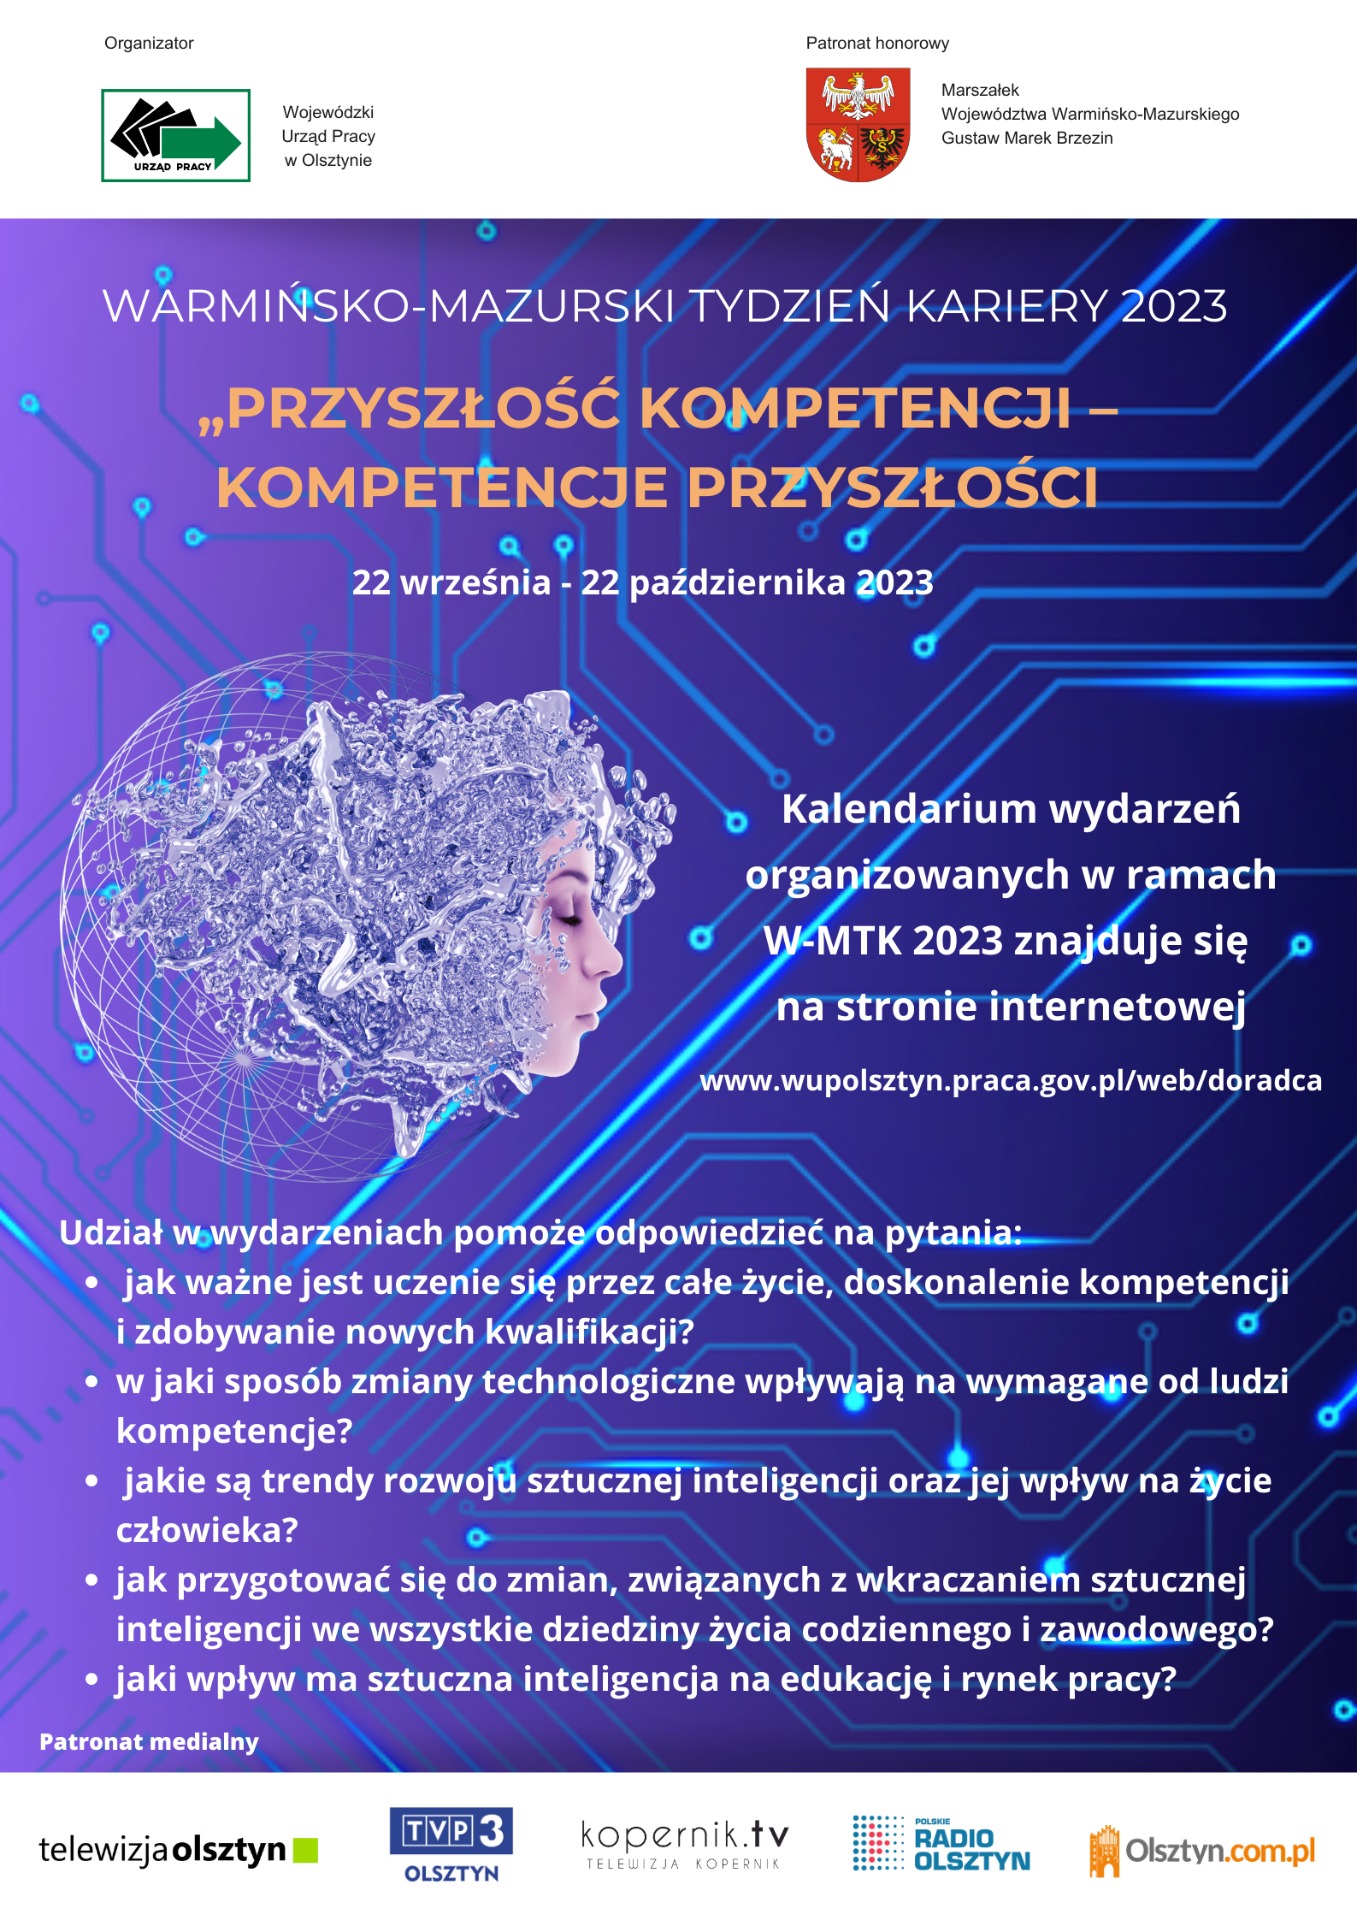 Warmińsko-Mazurski Tydzień Kariery 2023
pod hasłem:
„Przyszłość kompetencji – kompetencje przyszłości”